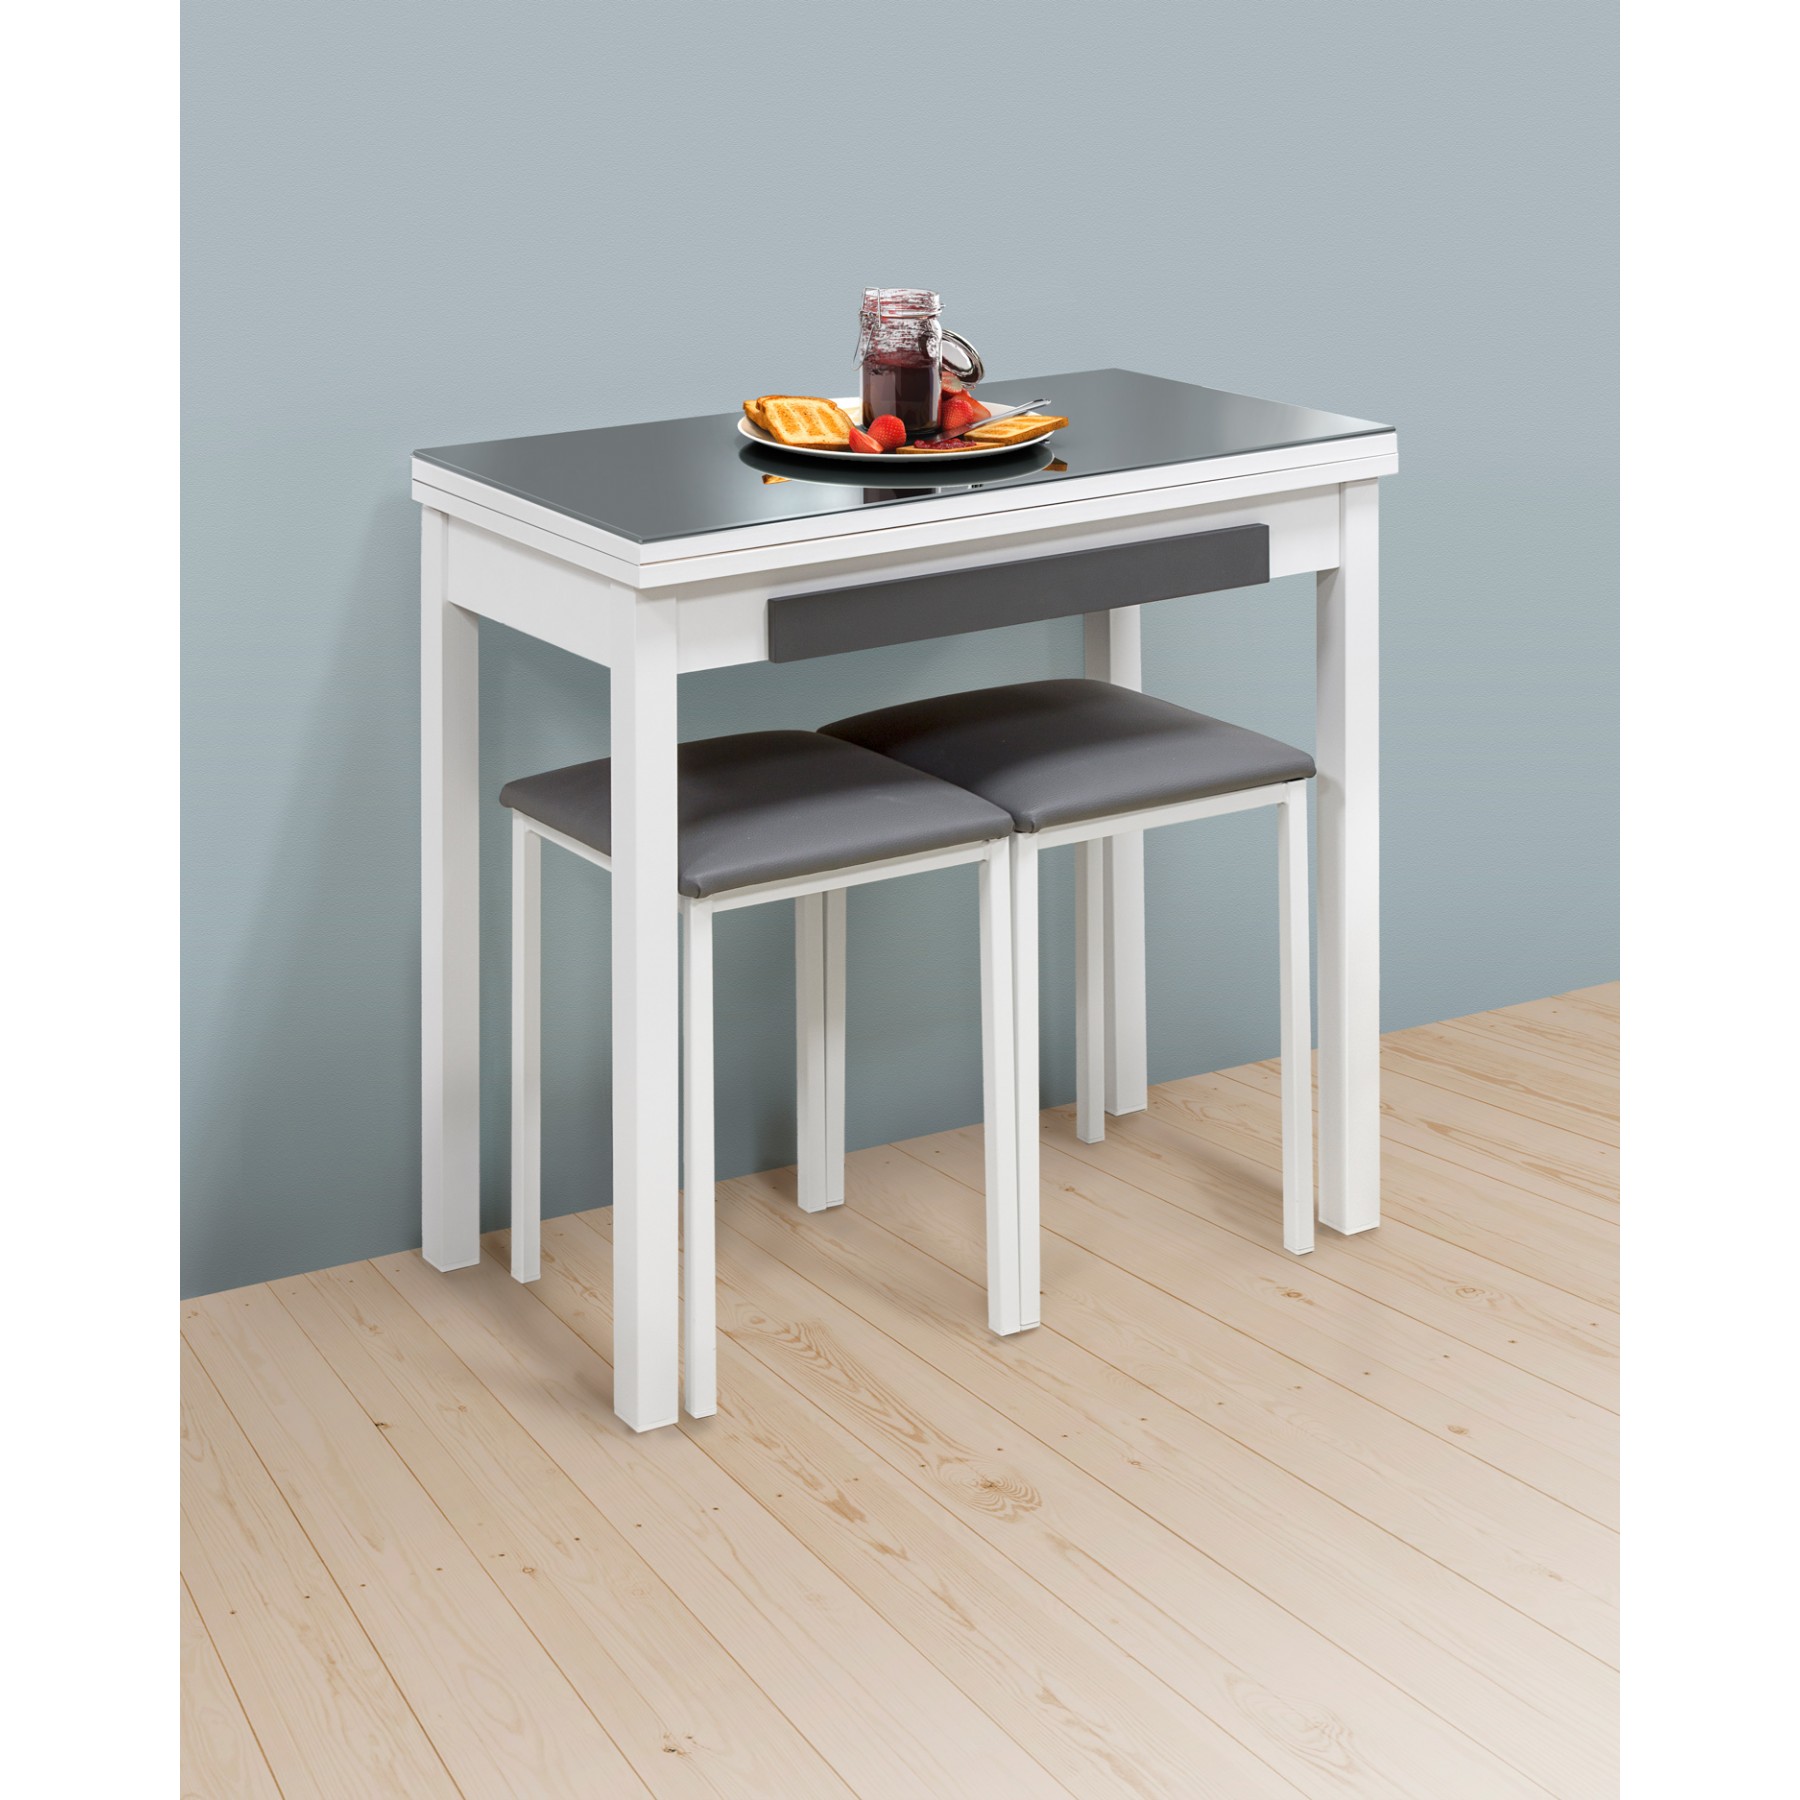 Mesa de cocina tipo libro aluminio blanca con cristal 80x40 cm - DTH